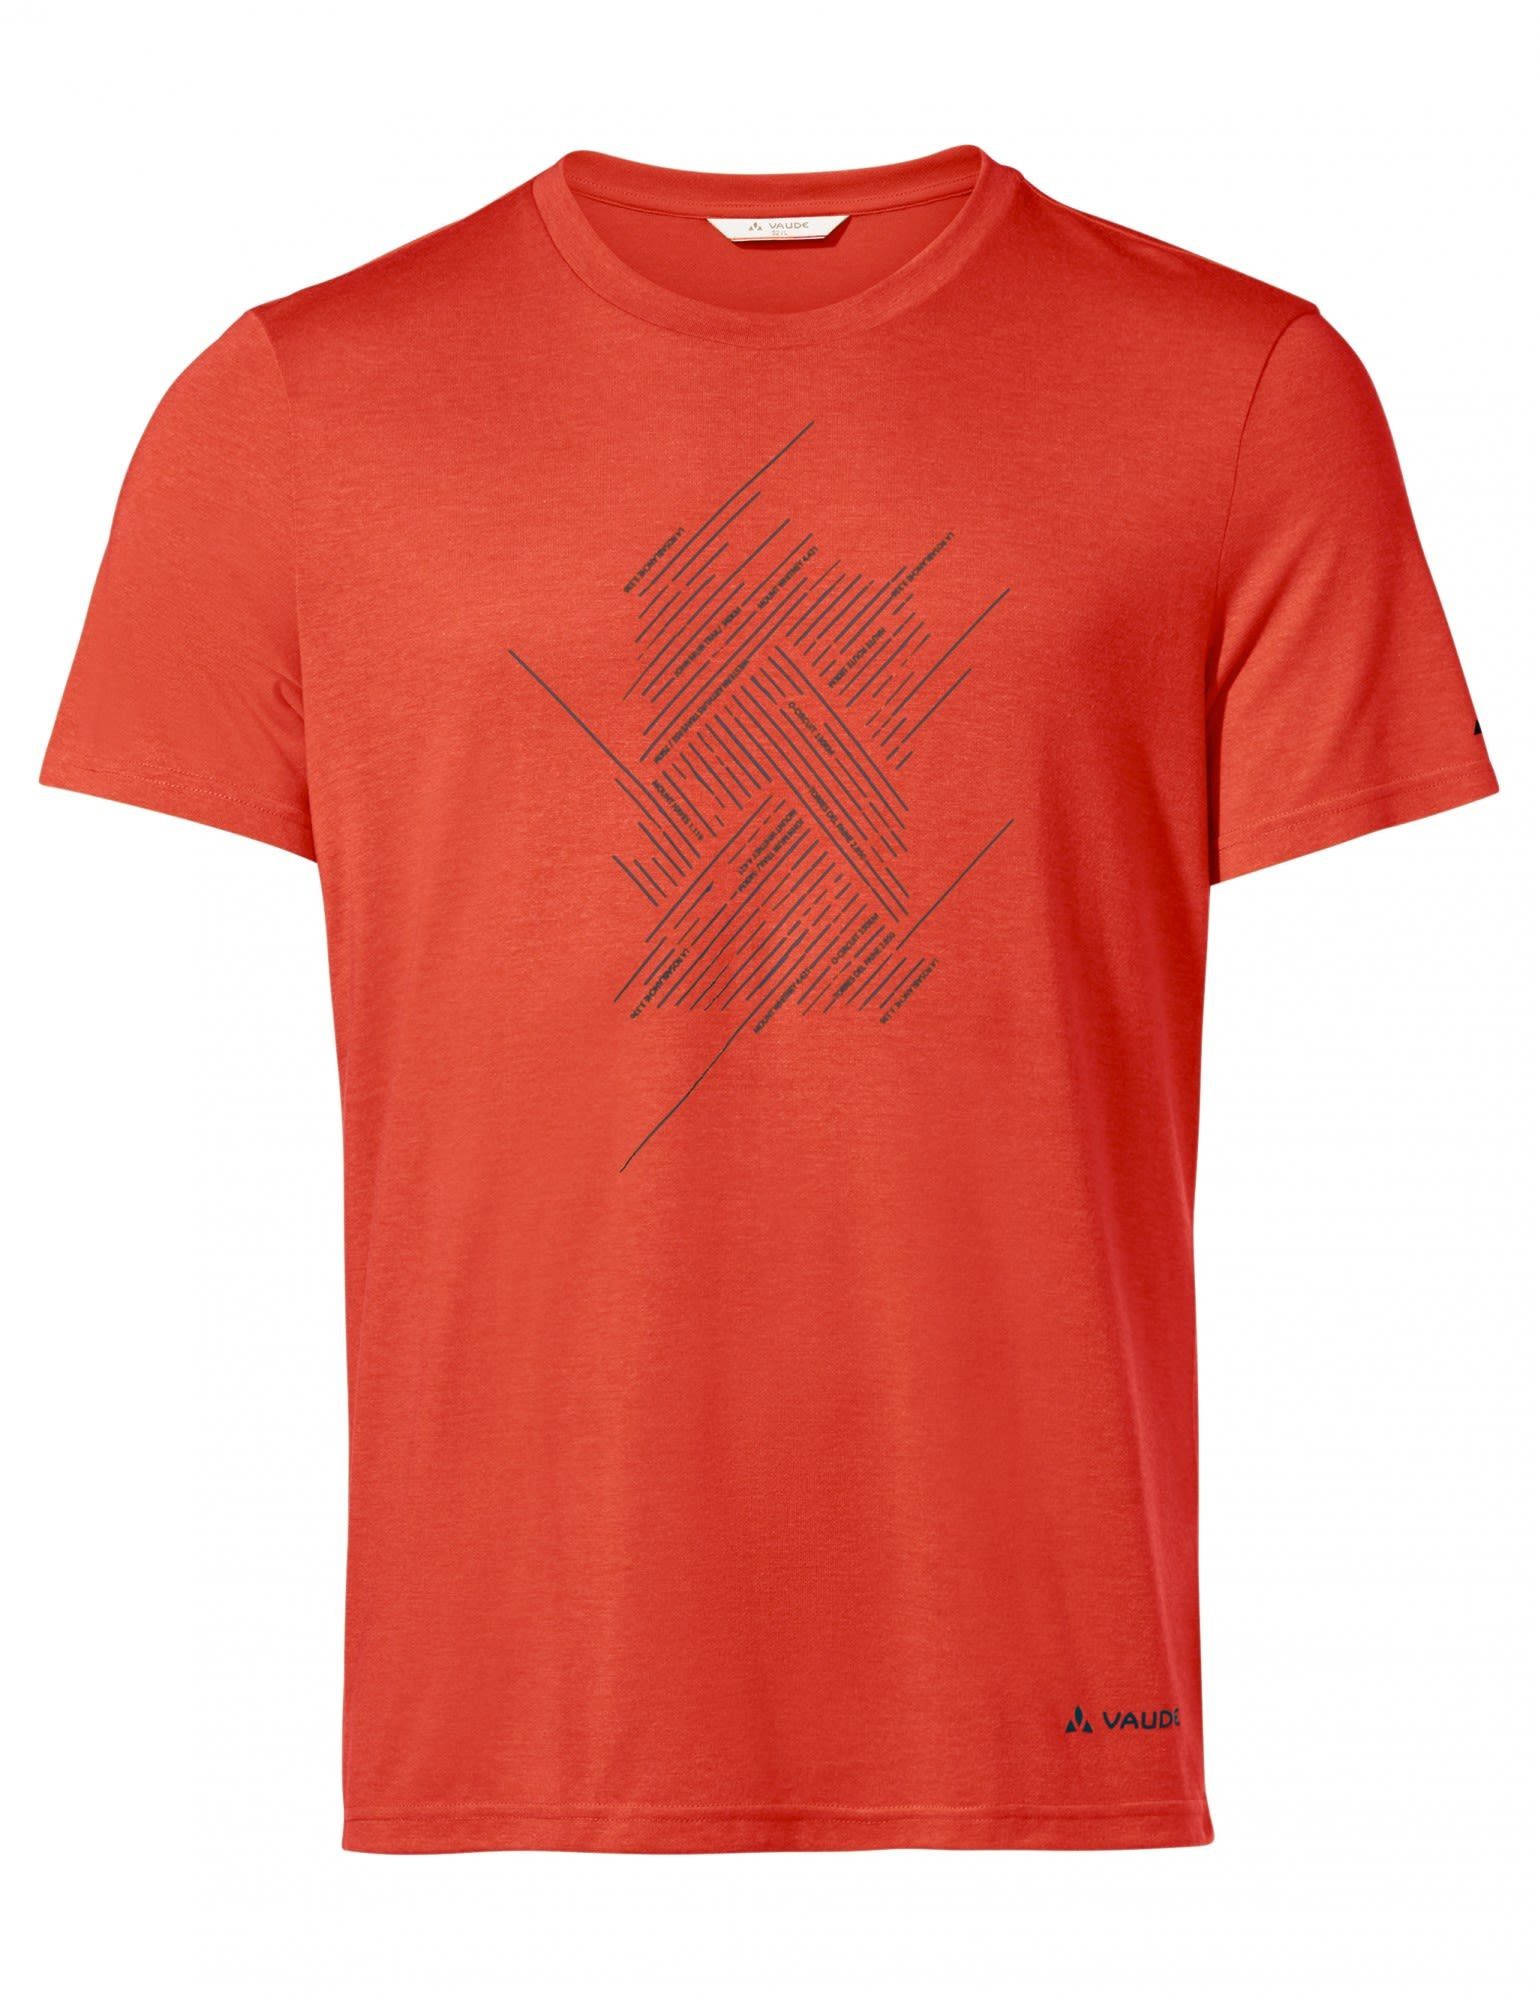 VAUDE T-Shirt Vaude Mens Tekoa T-shirt Iii Herren Kurzarm-Shirt Glowing Red